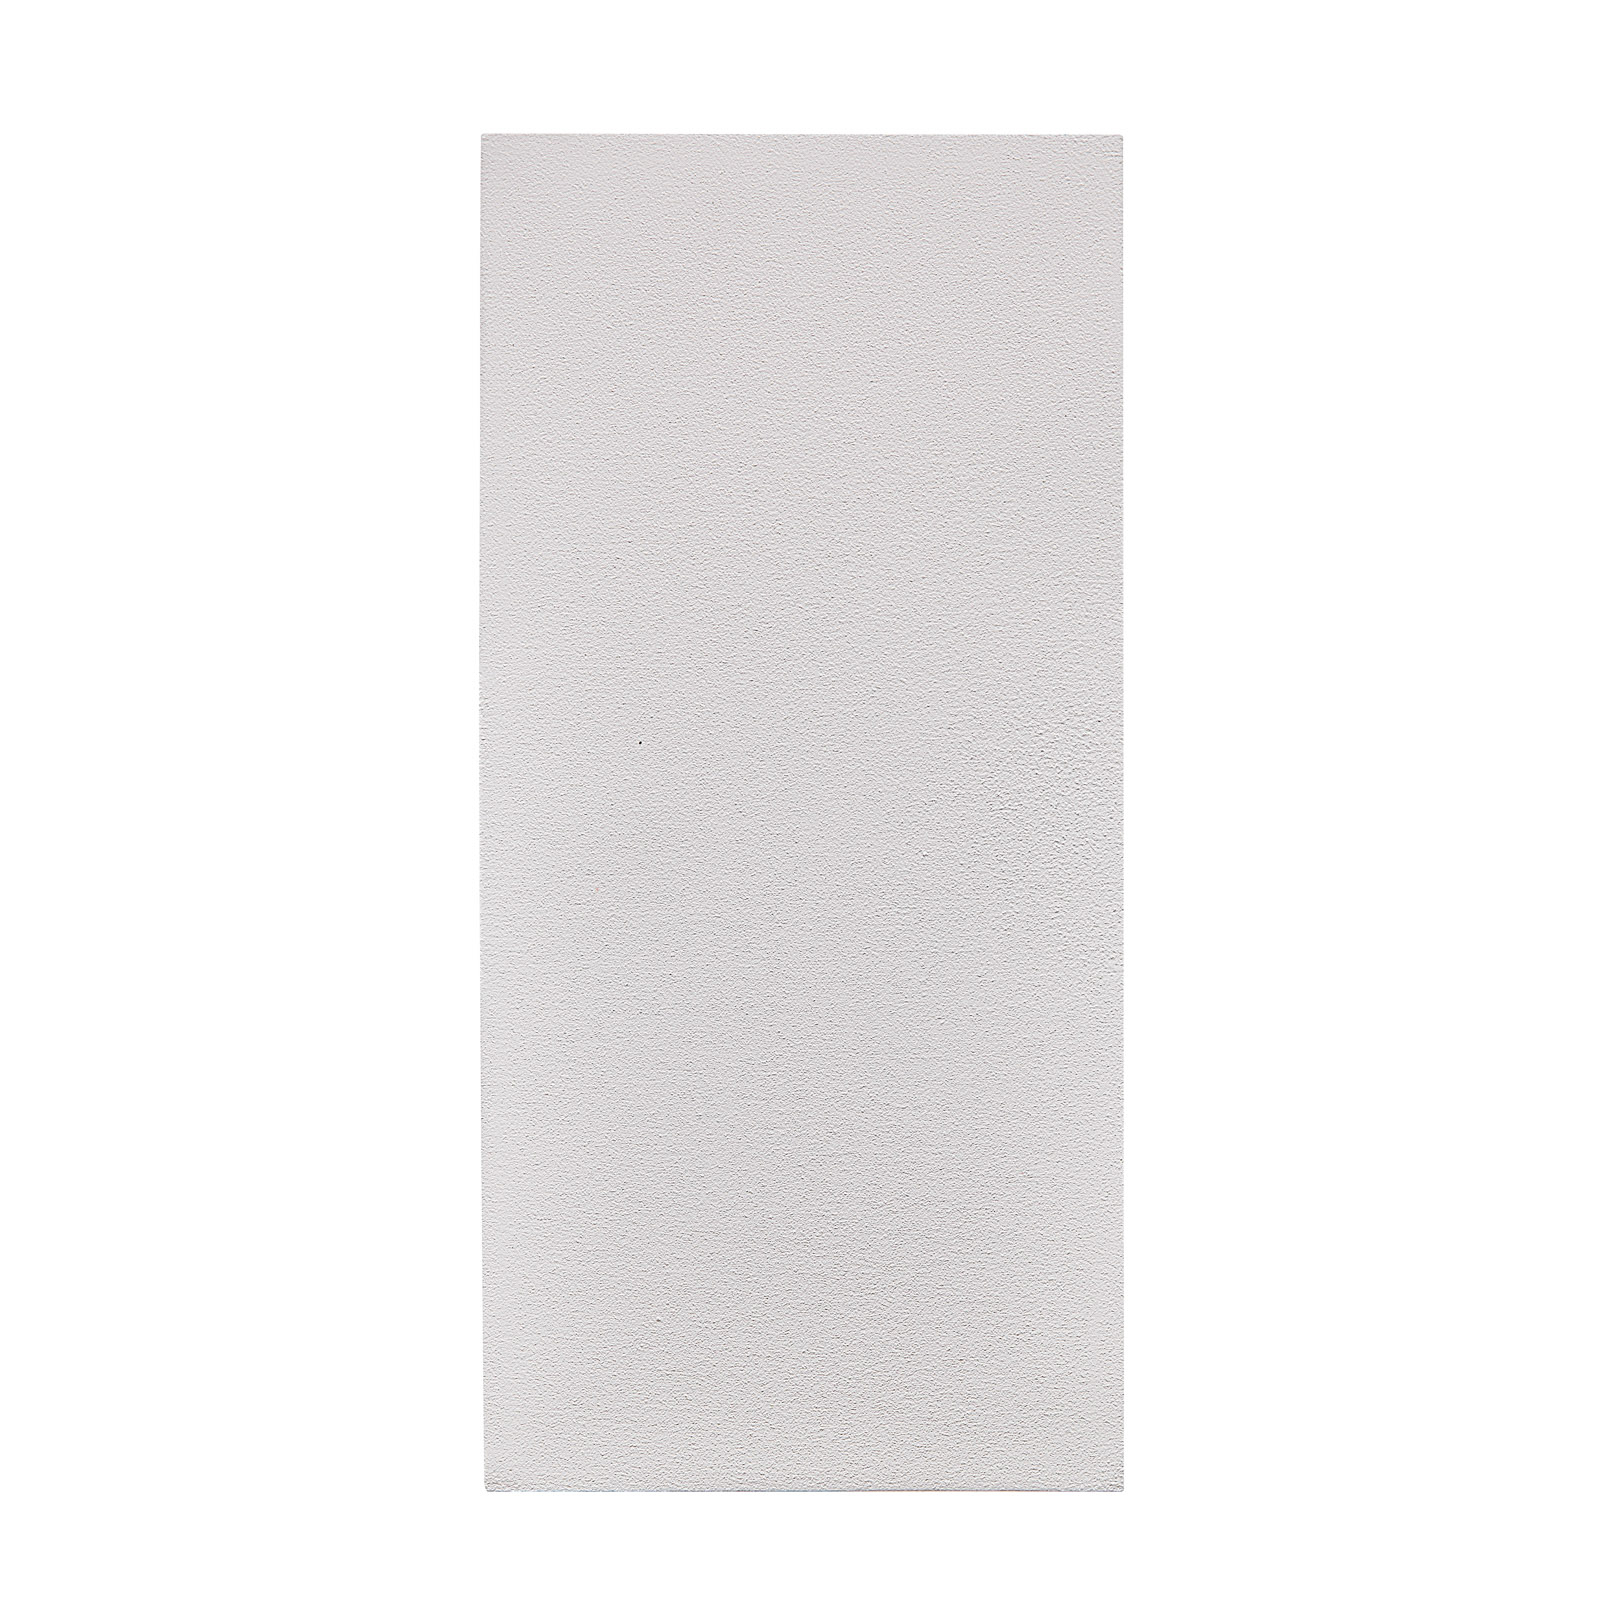 Venkovní světlo Canto Maxi Kubi 2, 17 cm, bílá